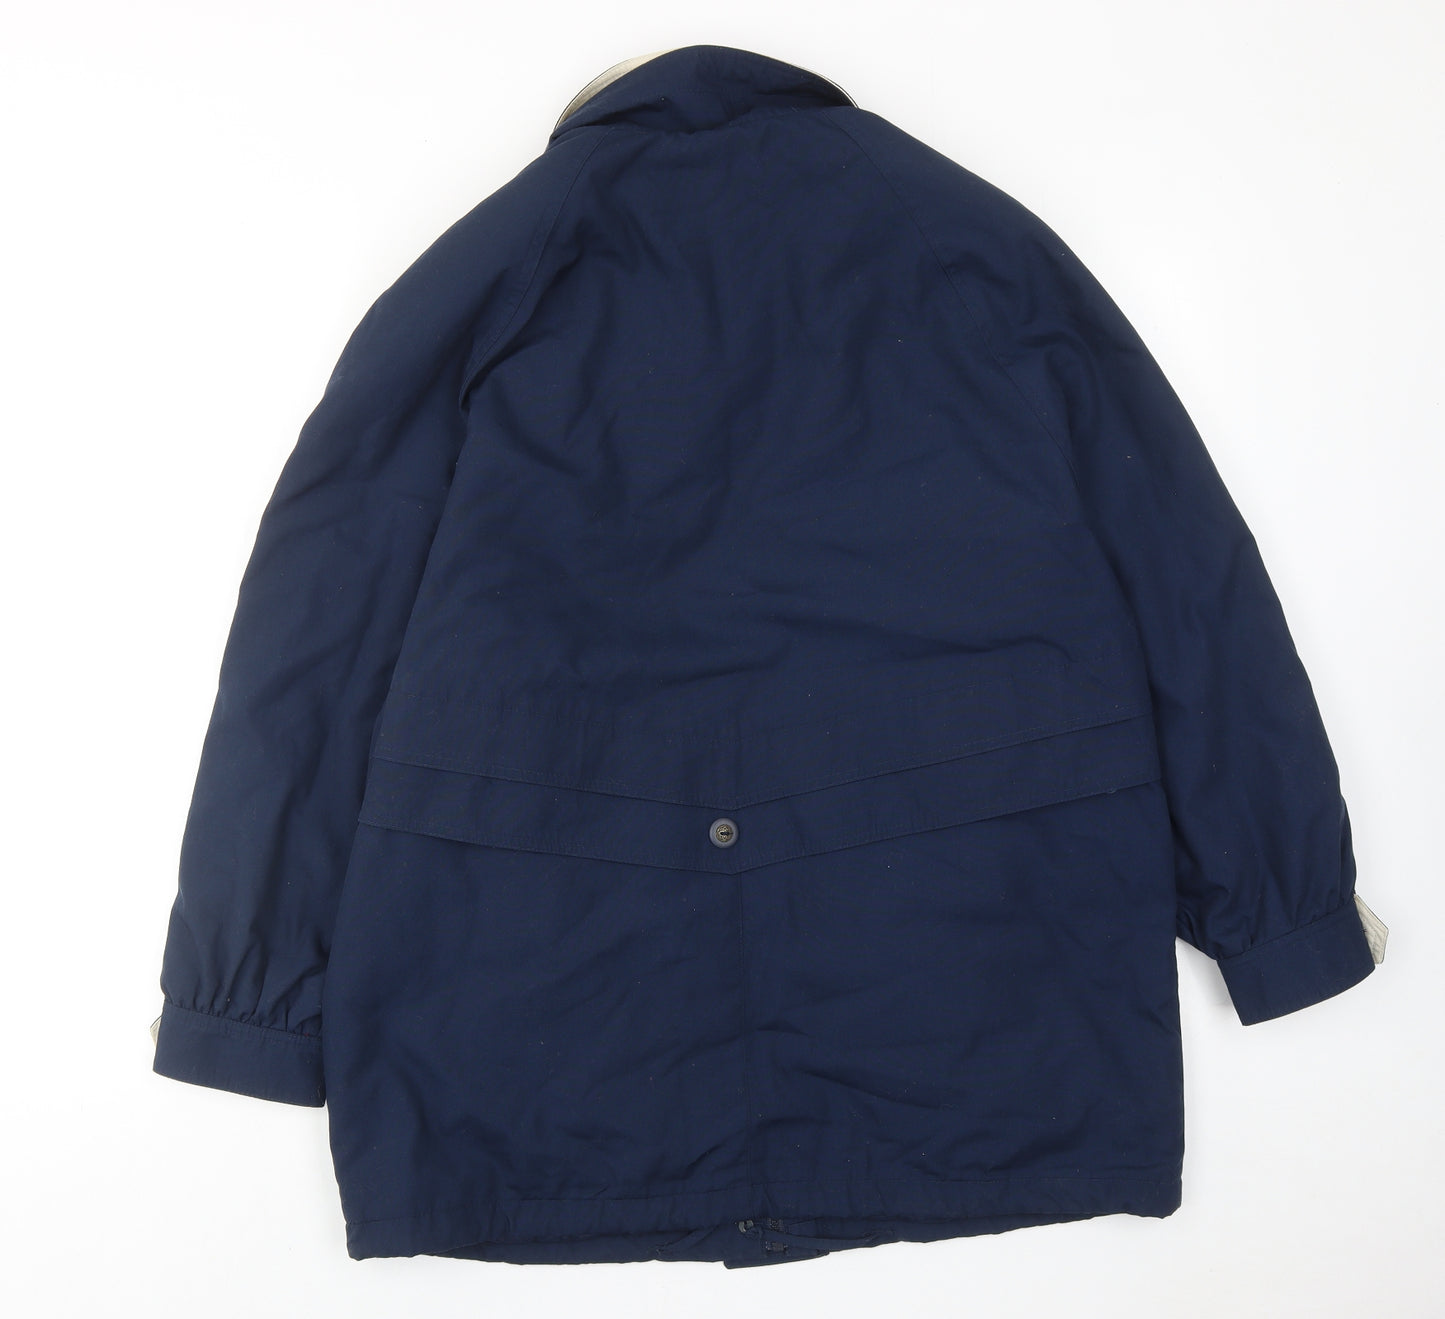 St. Bernard Womens Blue Jacket Size 12 Zip